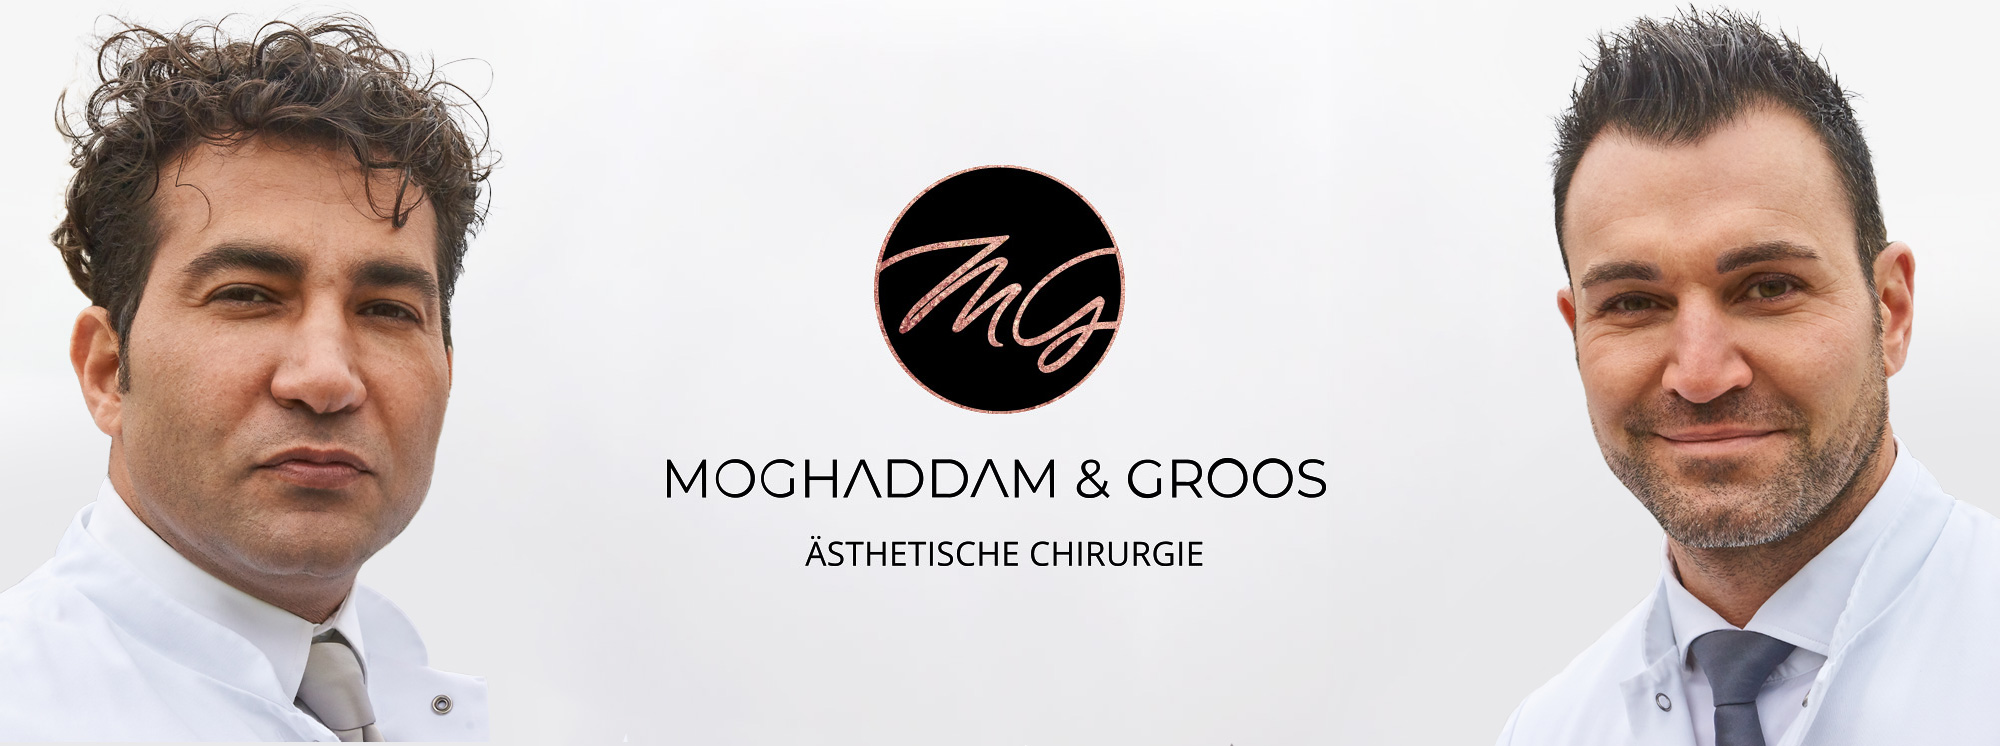 Moghaddam und Groos Ästhetische Chirugie- Startseitenbild